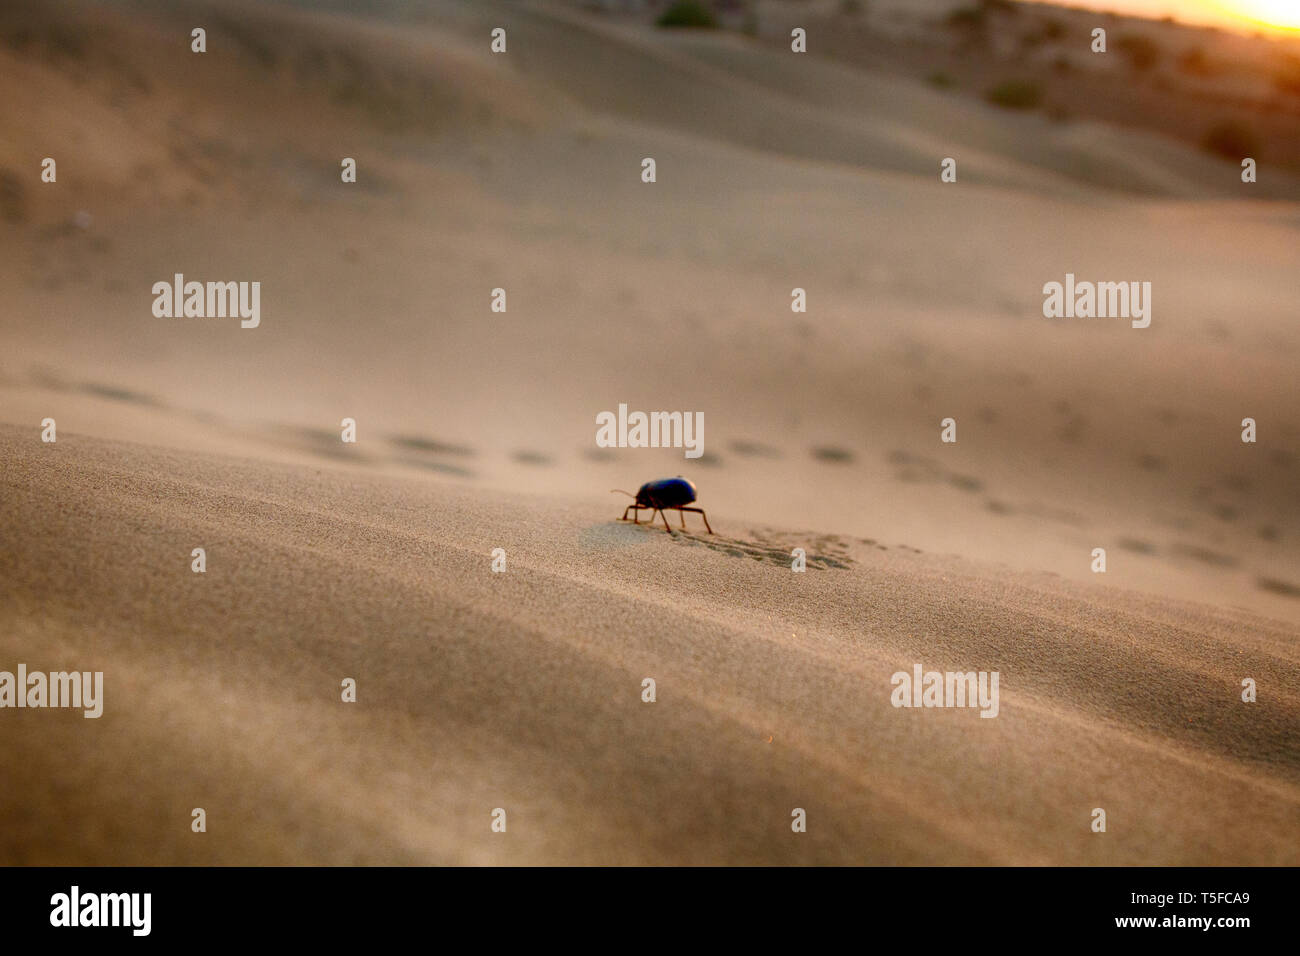 Black beetles (darkling beetles, Blaps gigas) roam sands of Great Indian Desert (Thar), leave chain of tracks. True image of the desert. Sunset Sands Stock Photo